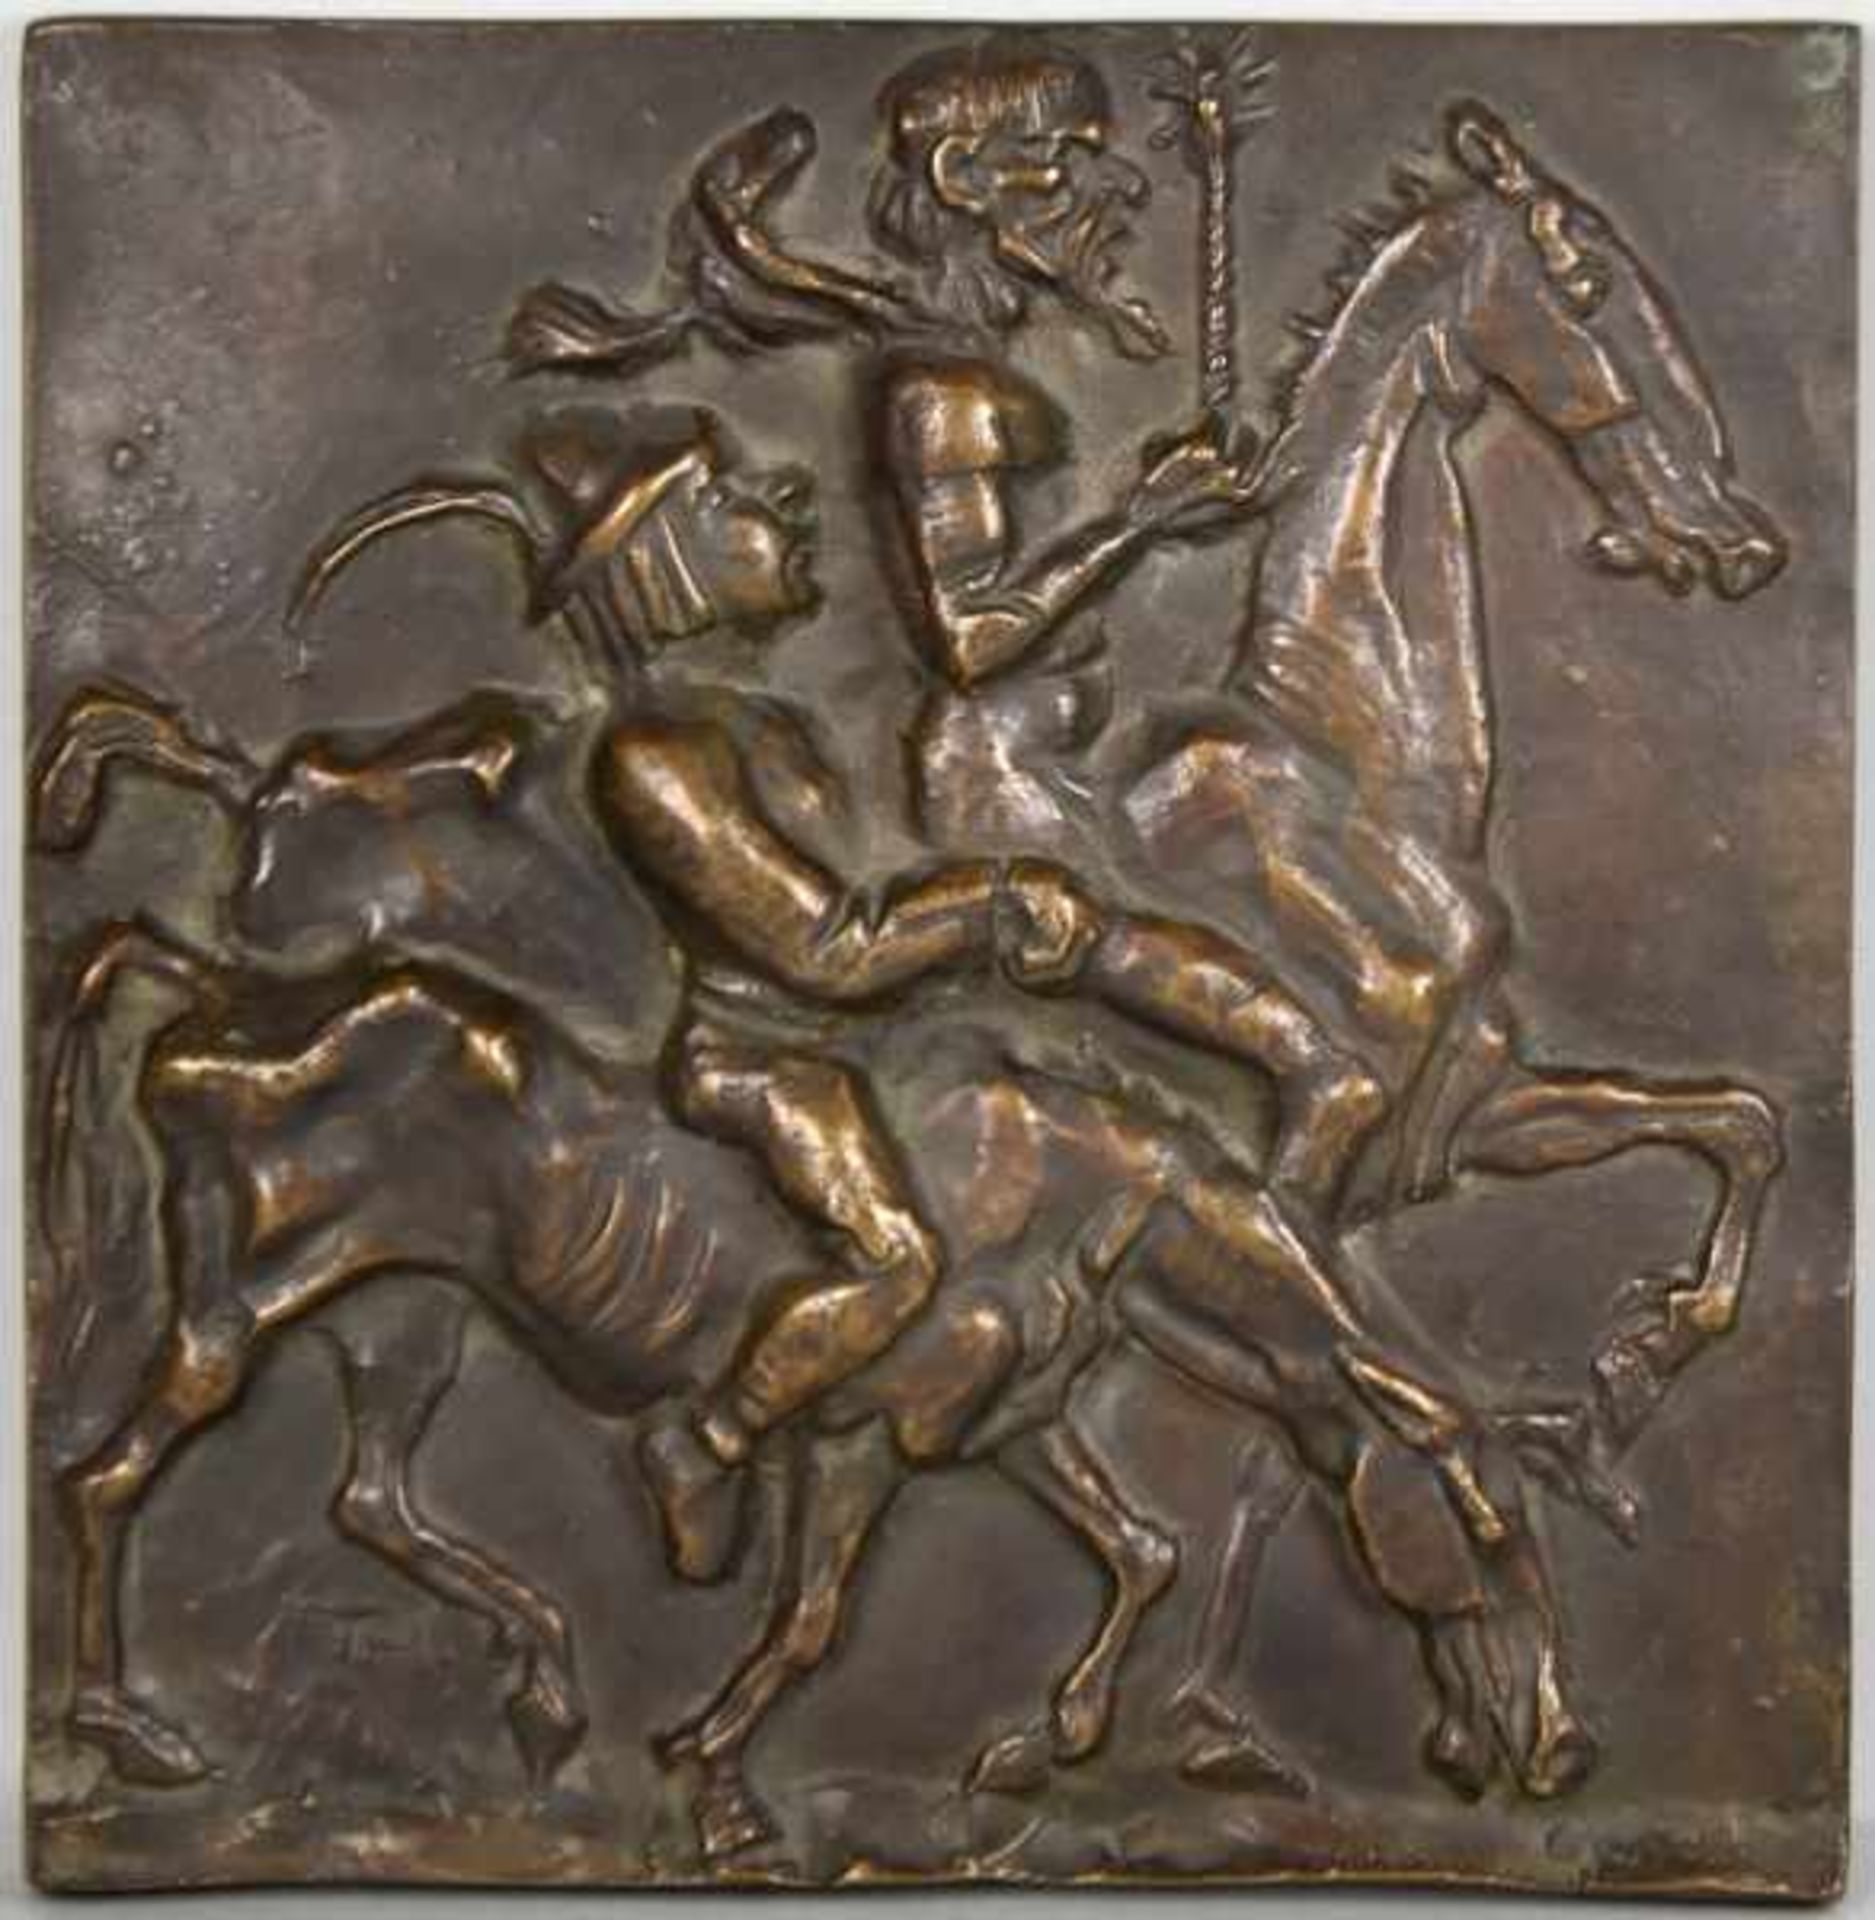 THORAK Josef (1889 Salzburg - 1952 Bad Endorf) "Don Quichotte", Bronzerelief, signiert "TH" links